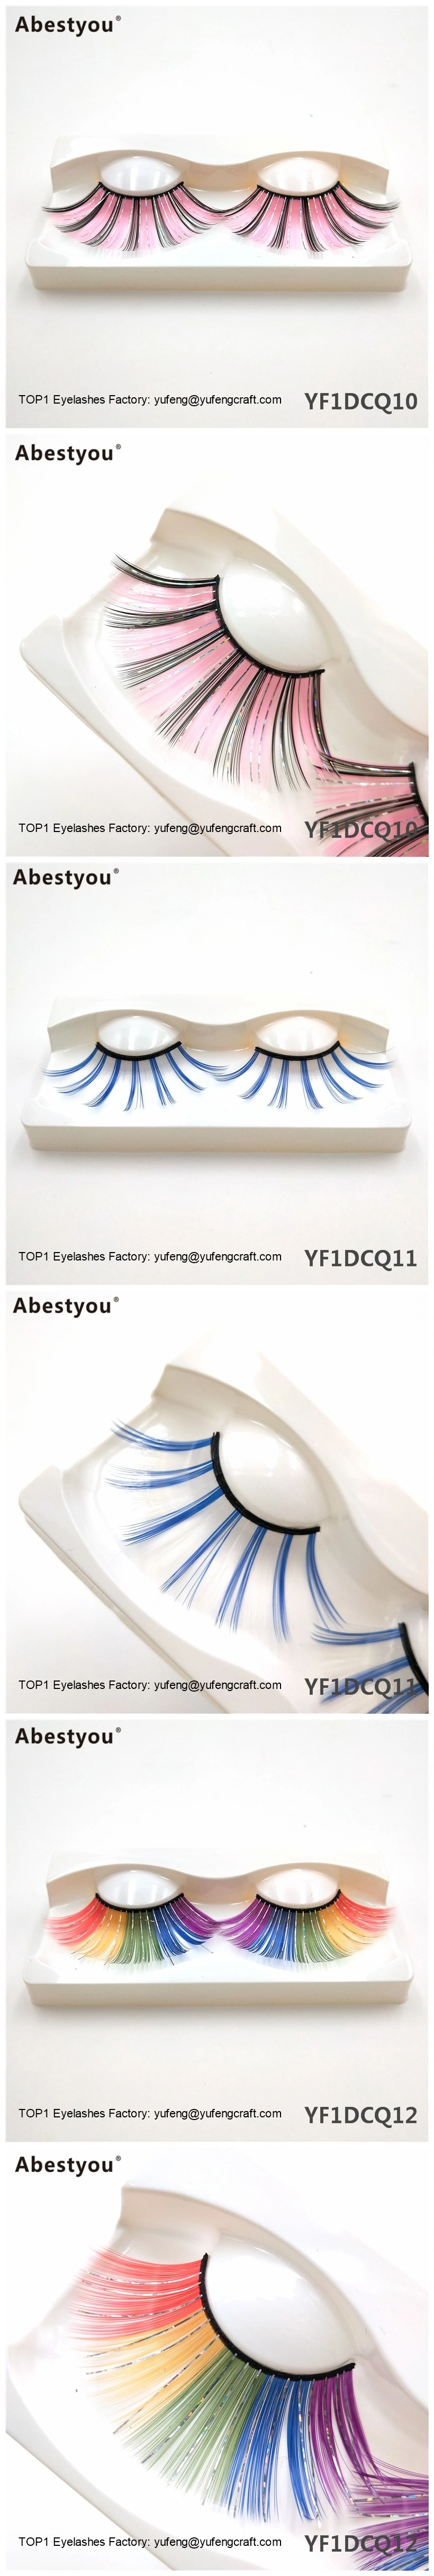 Abestyou New Wholesalehand Made 3D Colorful Eyelashes